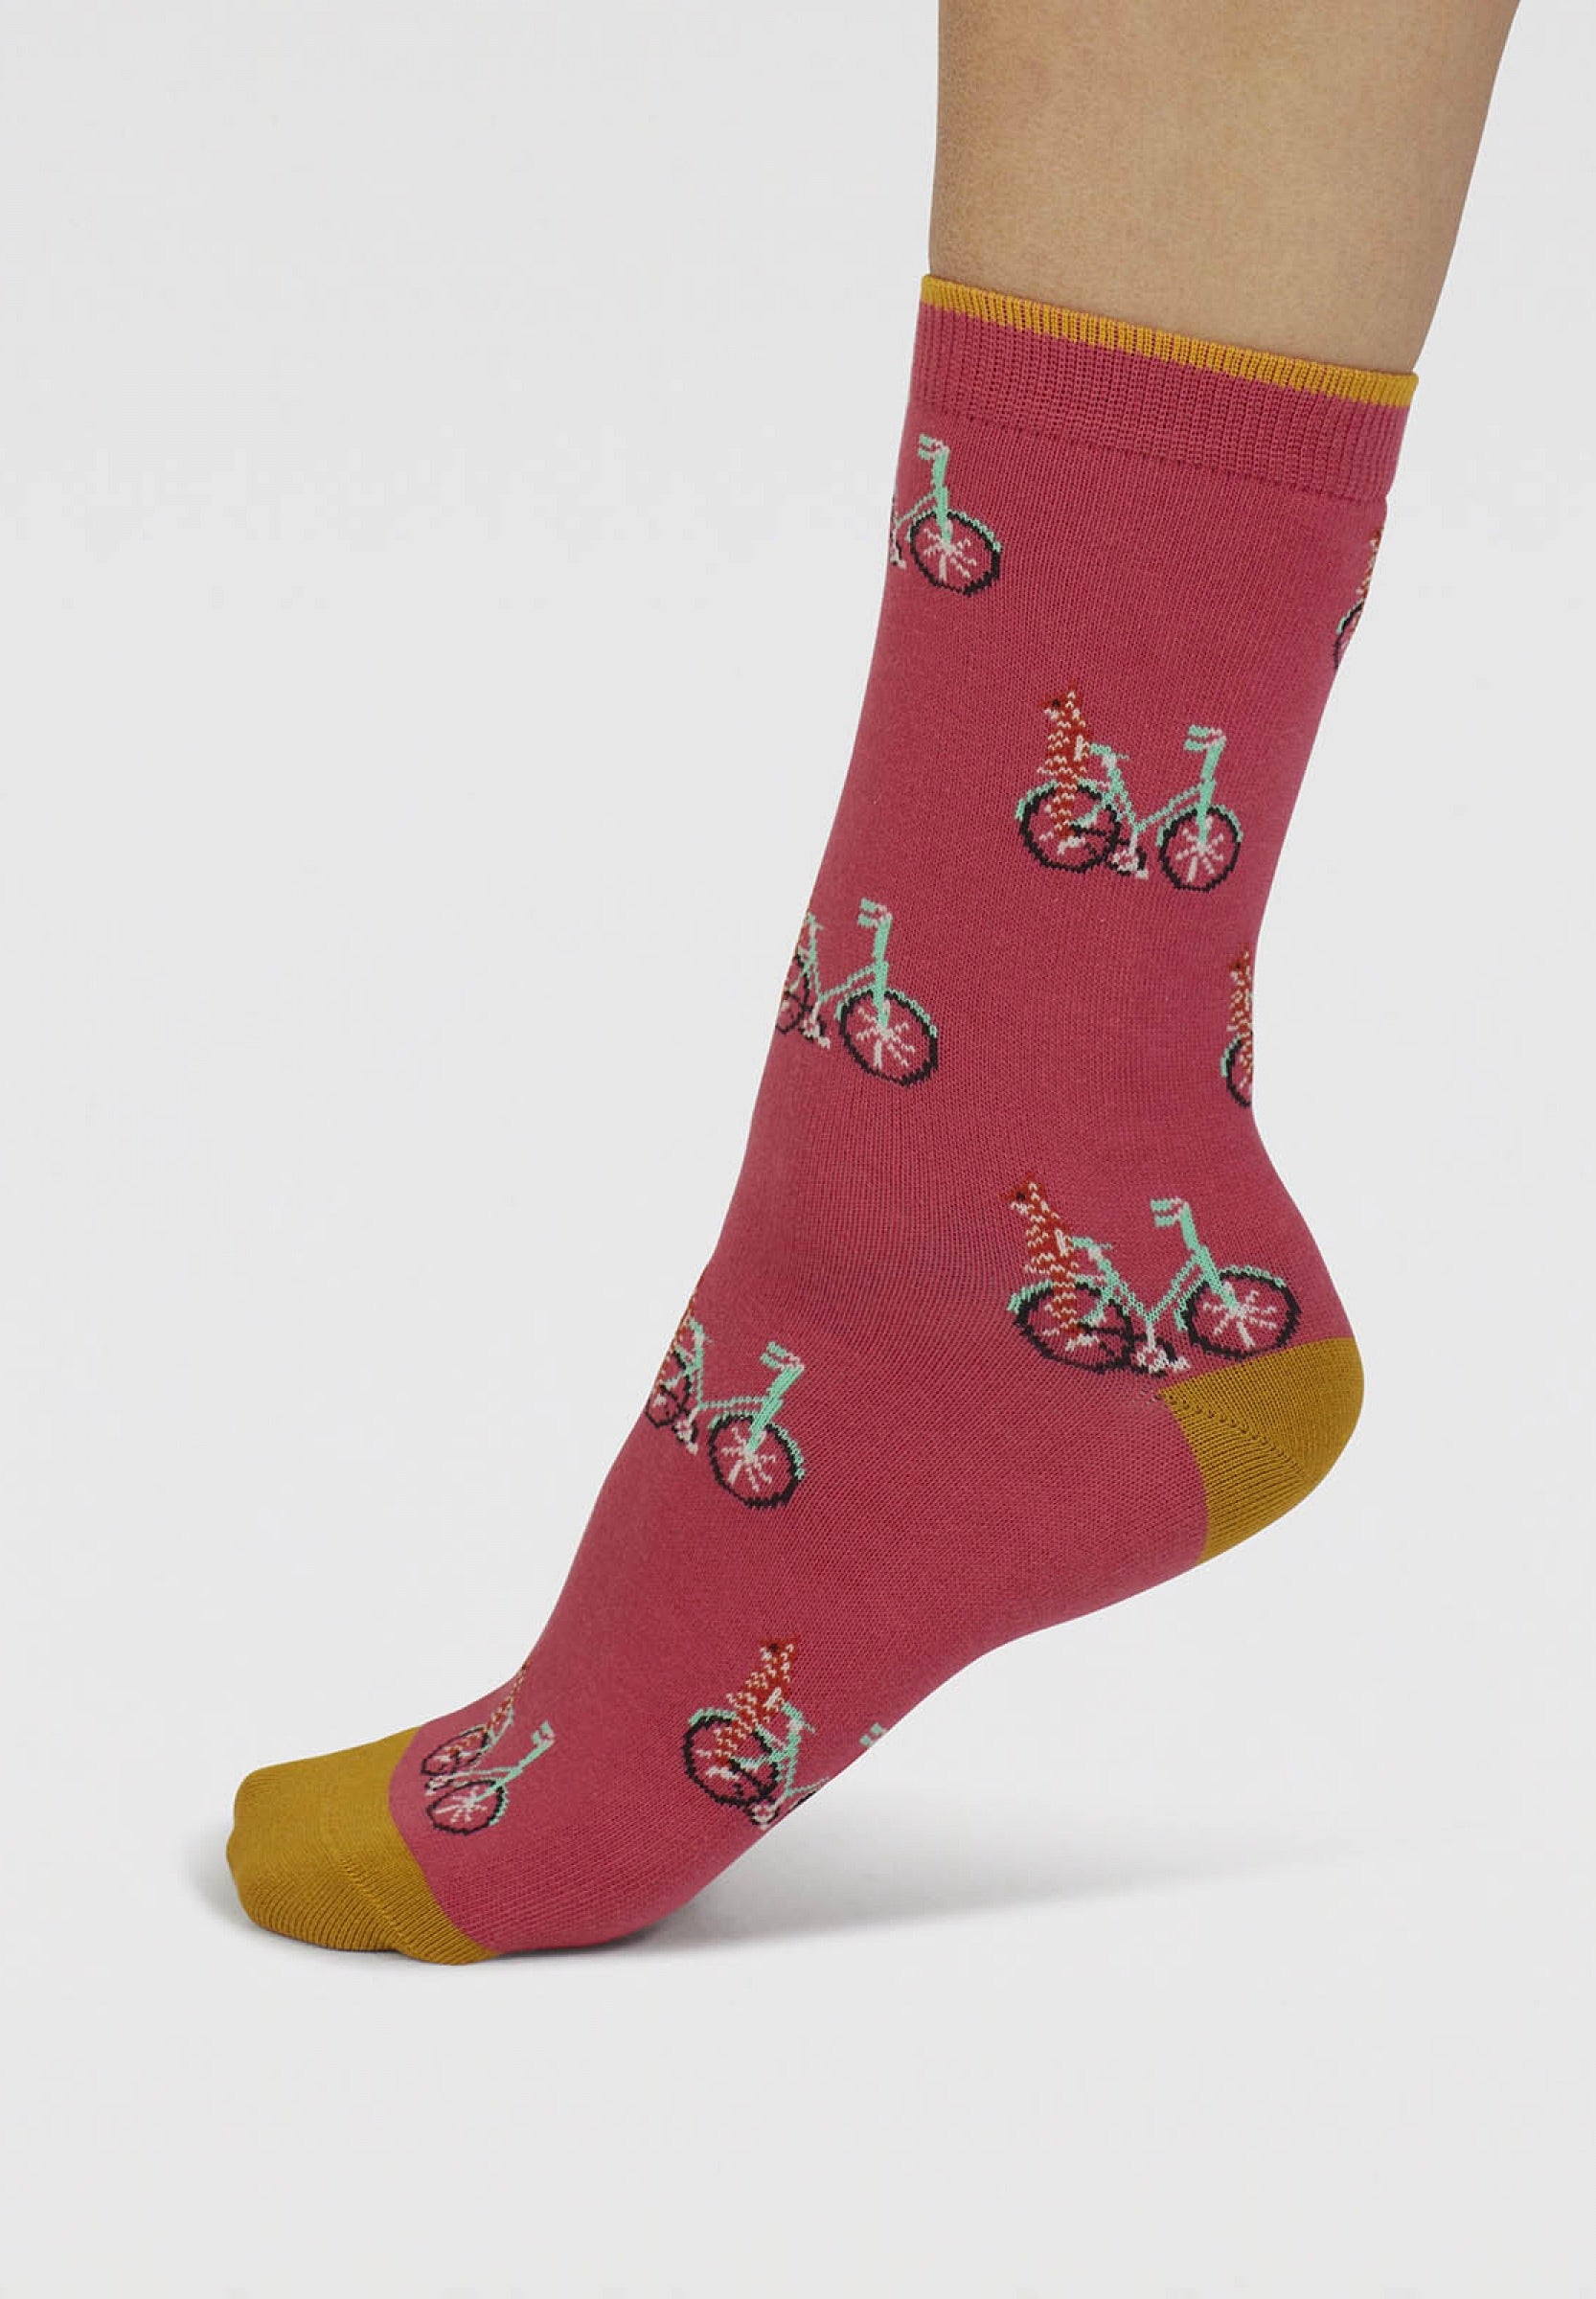 dilloyn cat and bike socks radish pink